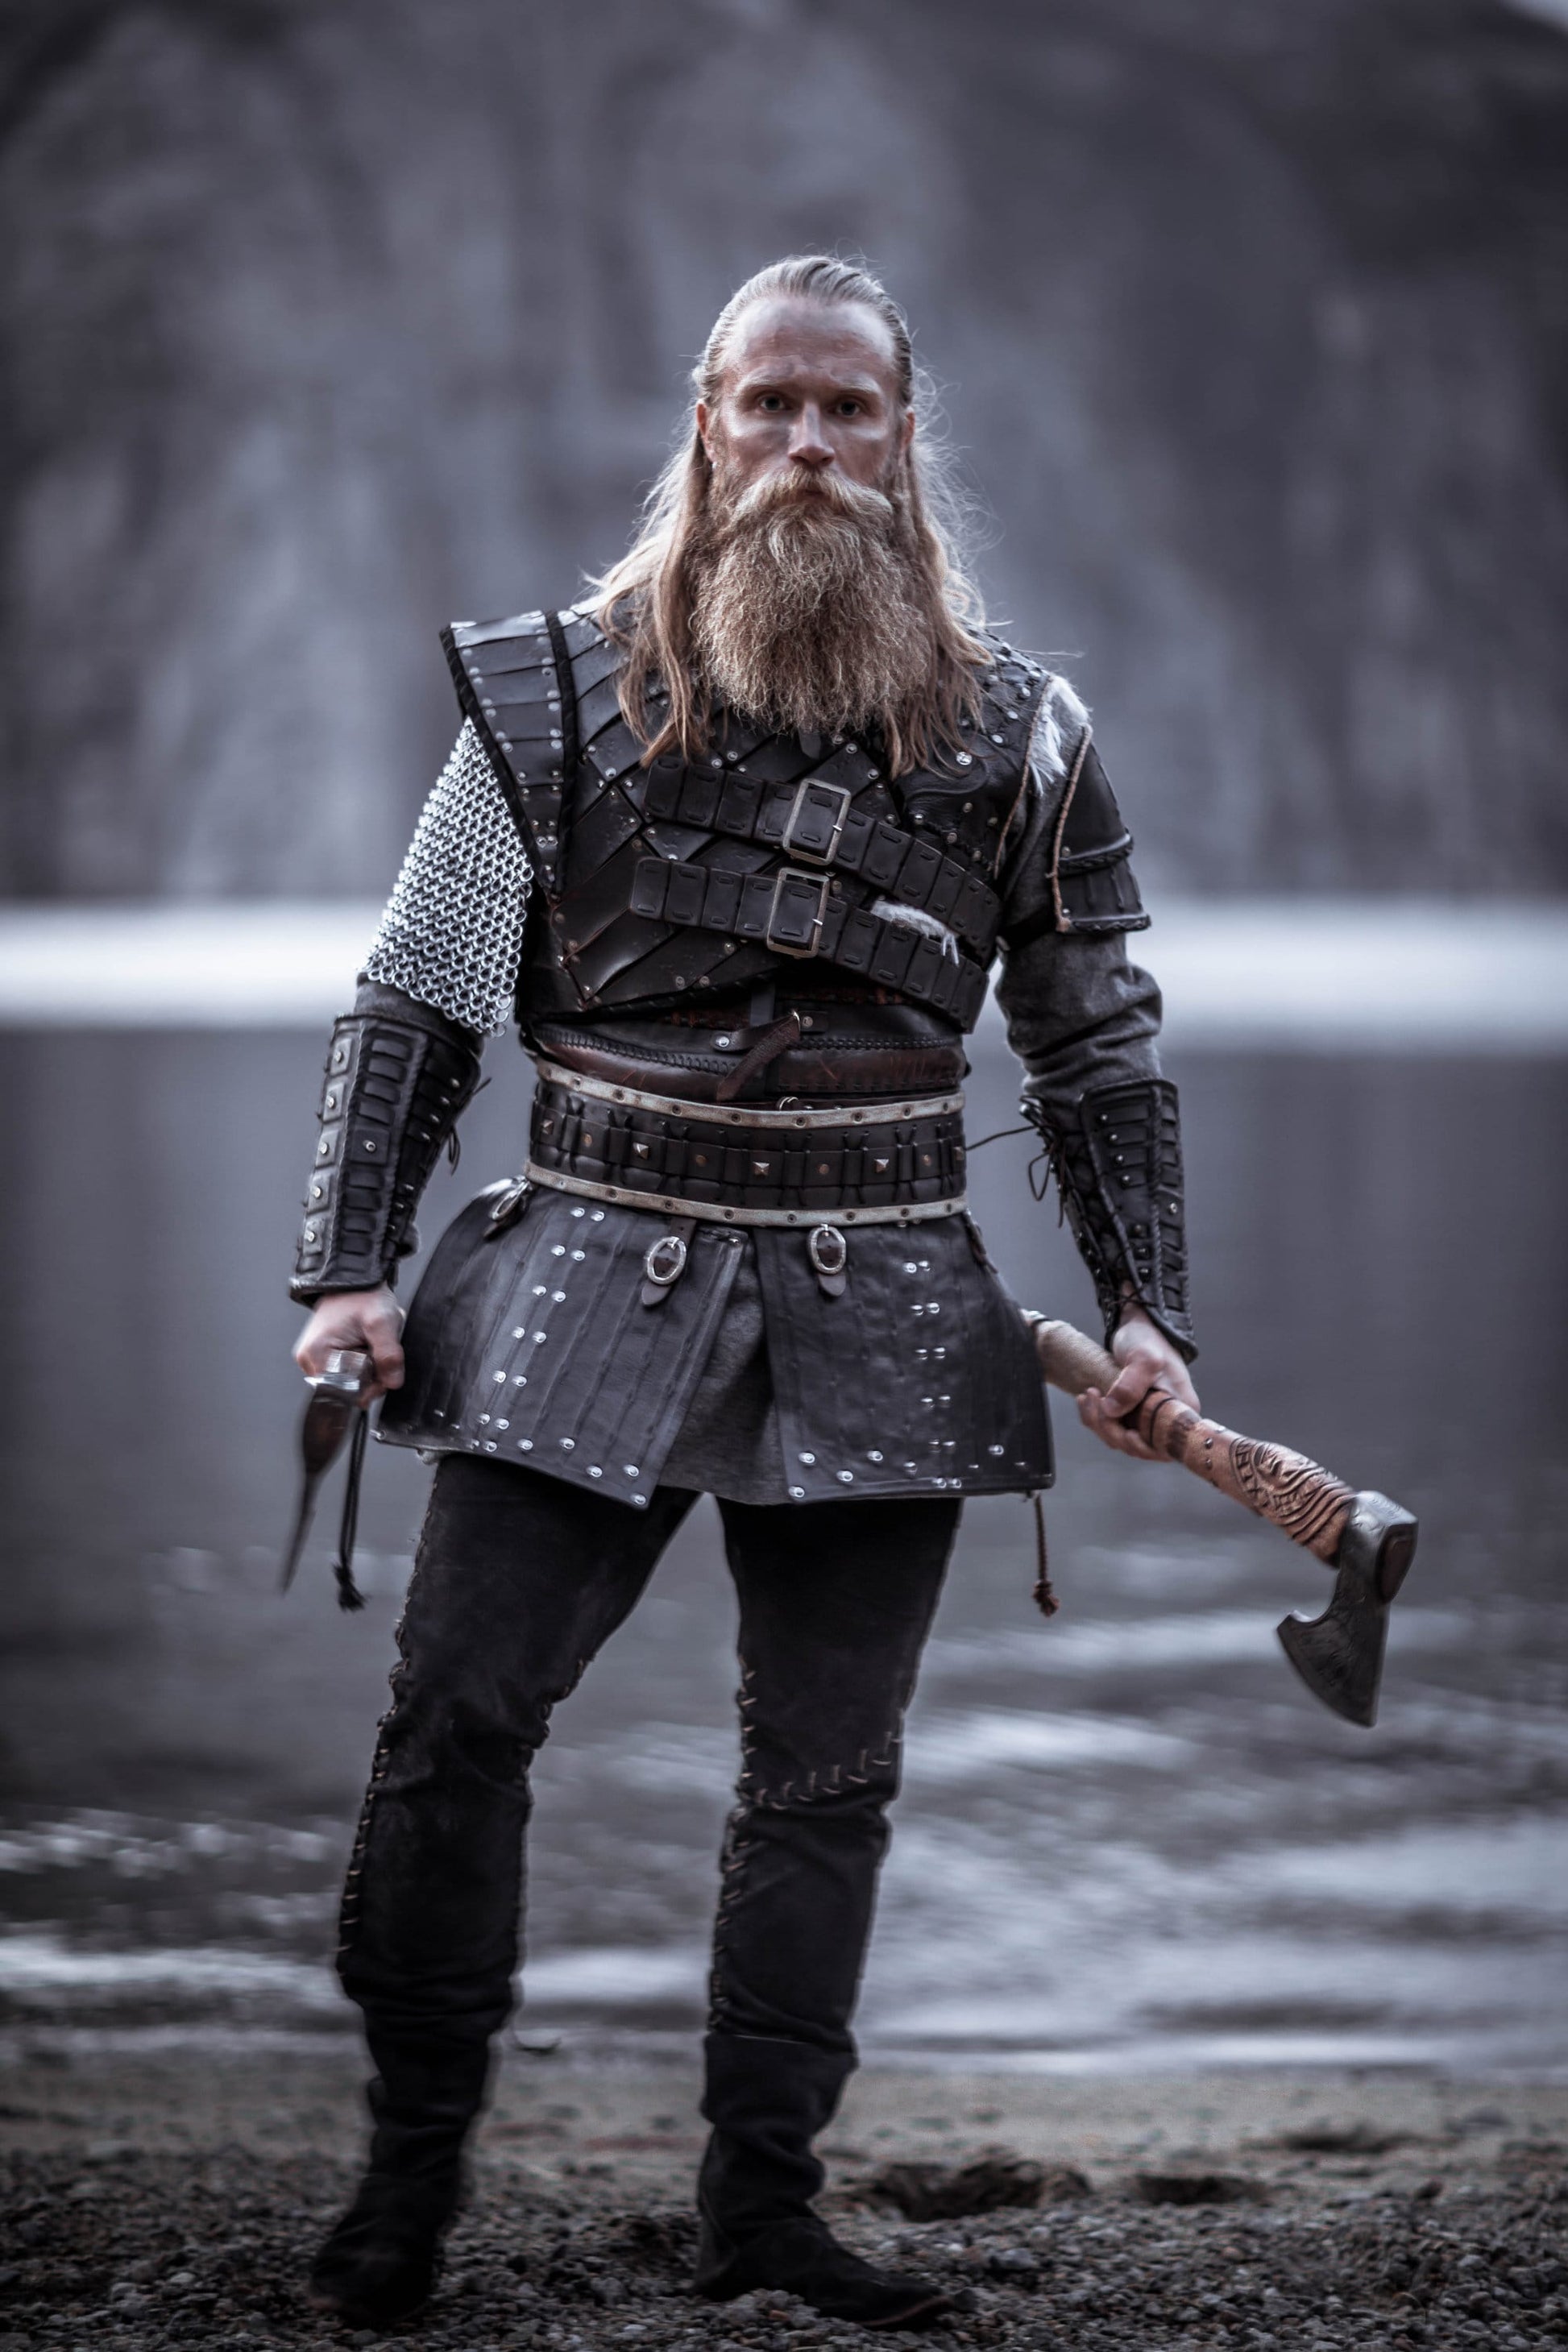 Vikings Ivar the Boneless, the Real Ivar the Boneless